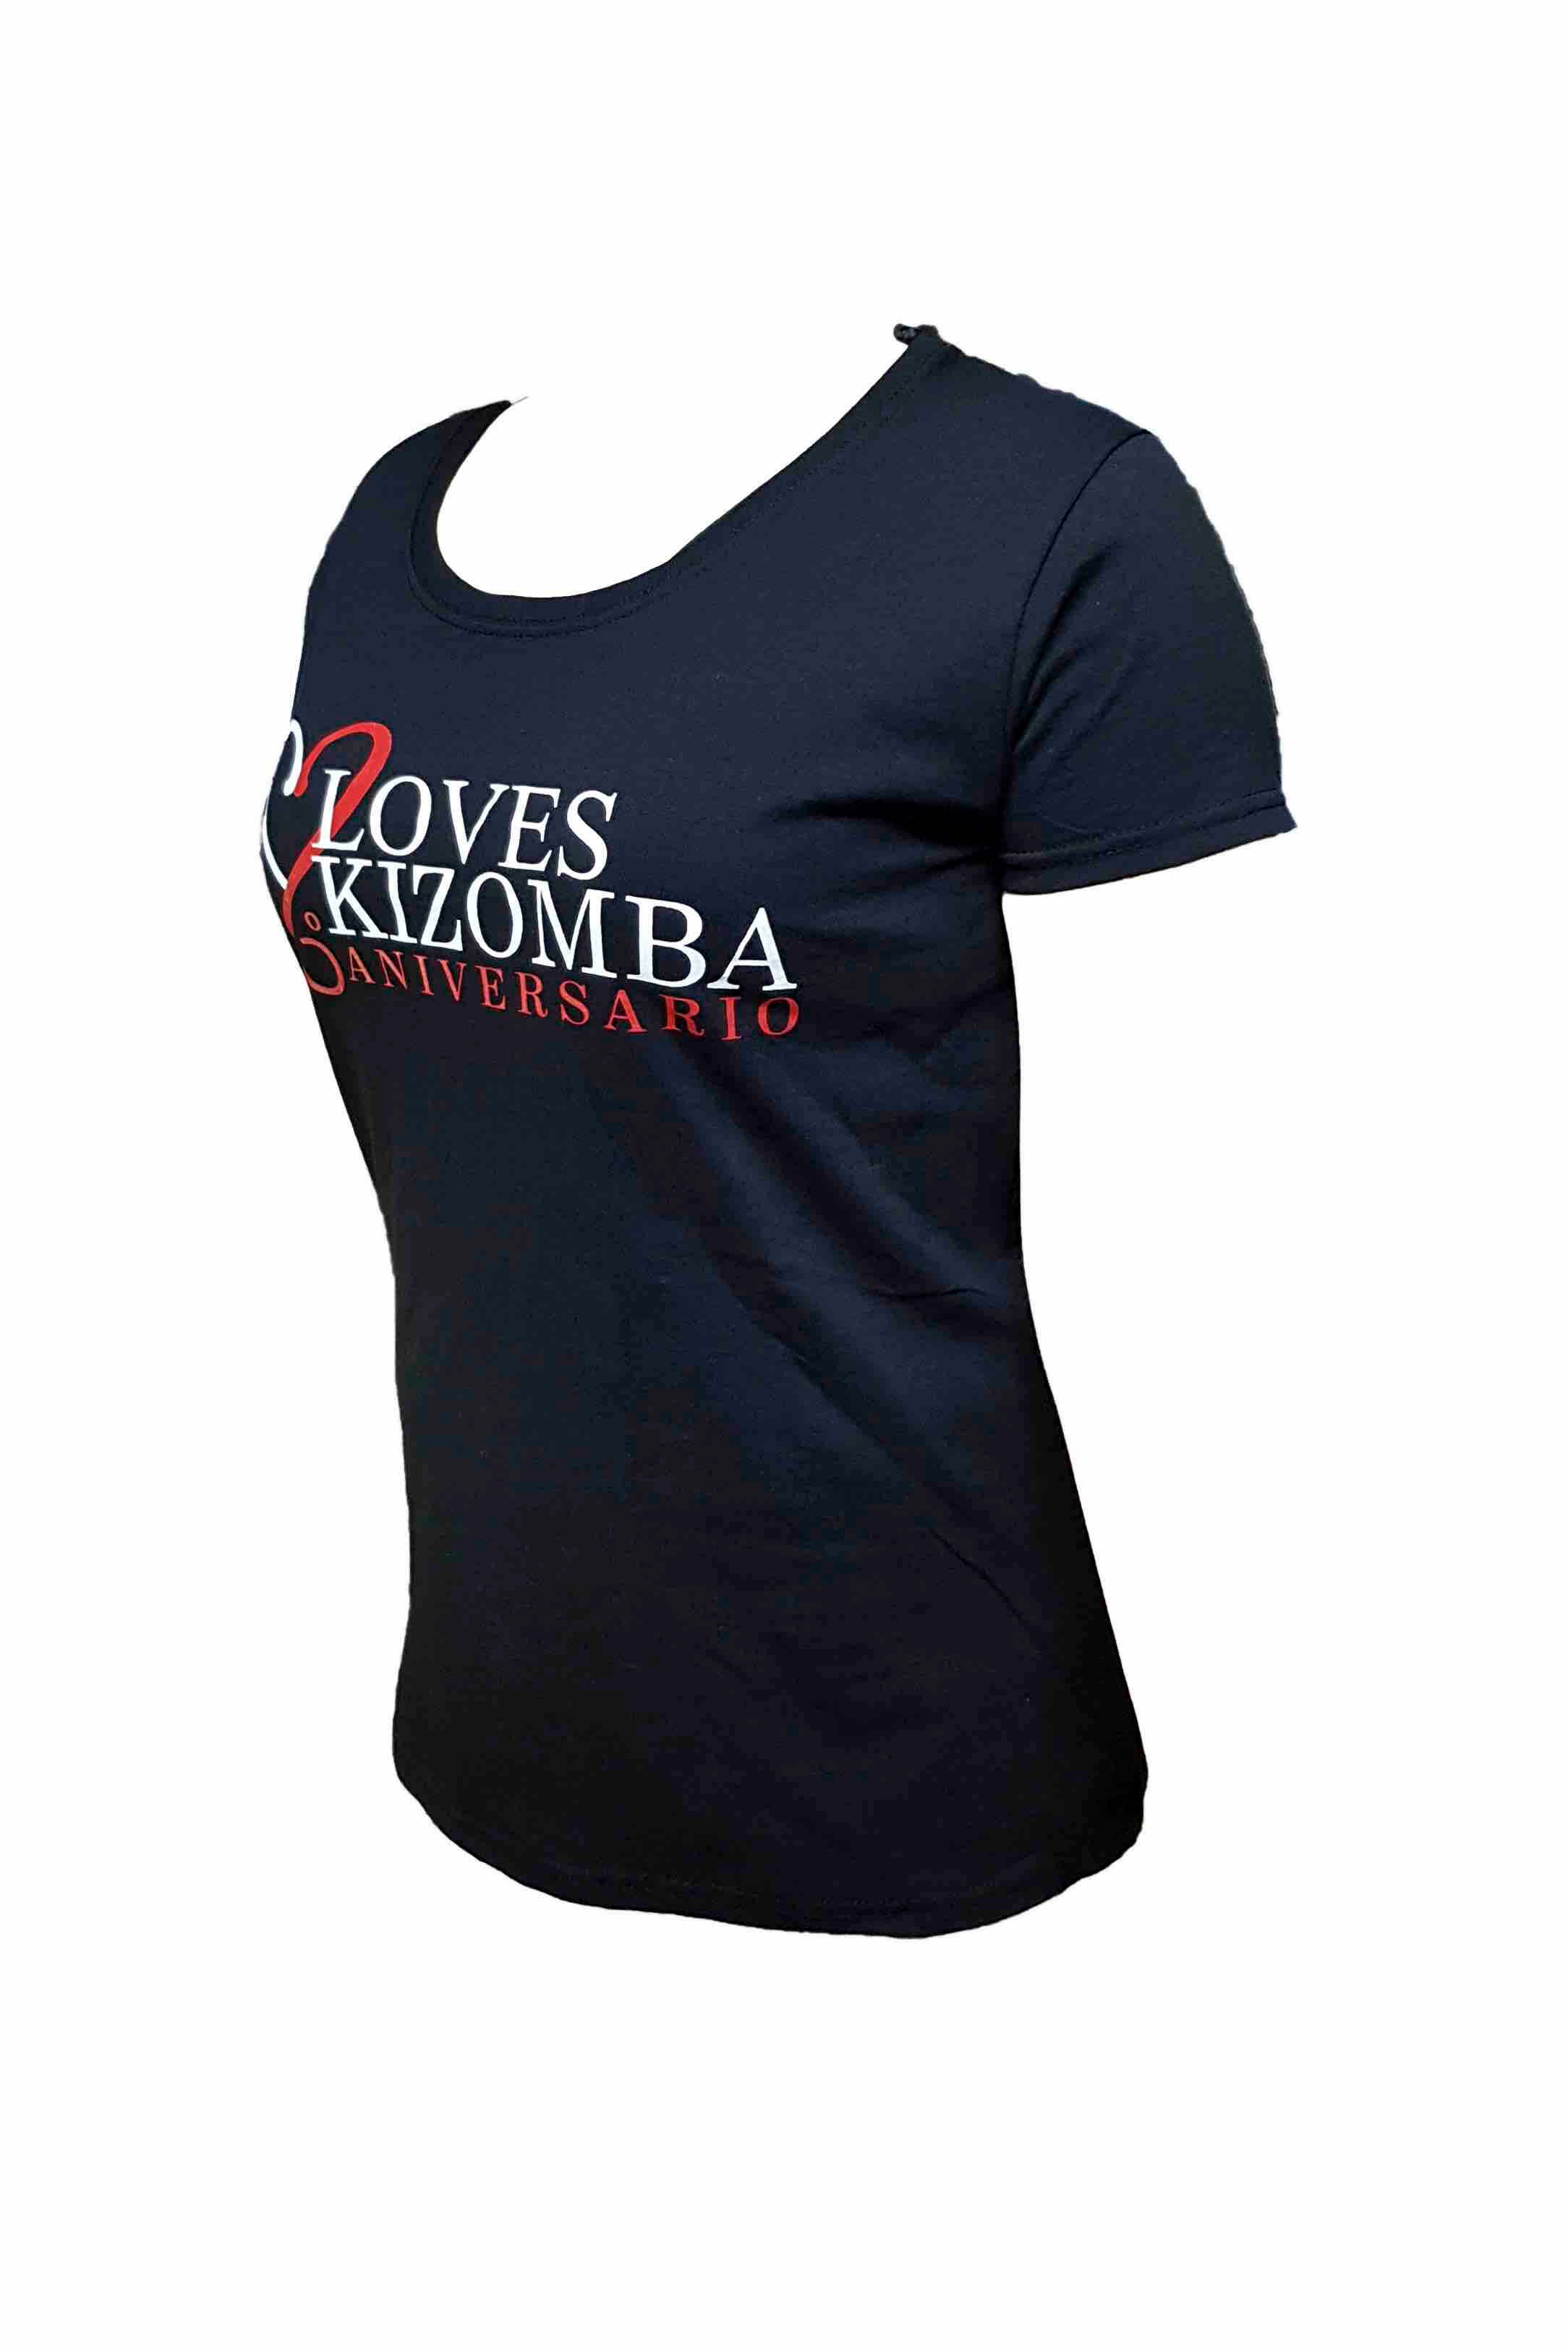 Camiseta Negra de Mujer - LovesKizomba 6ºAniversario - LovesKizomba